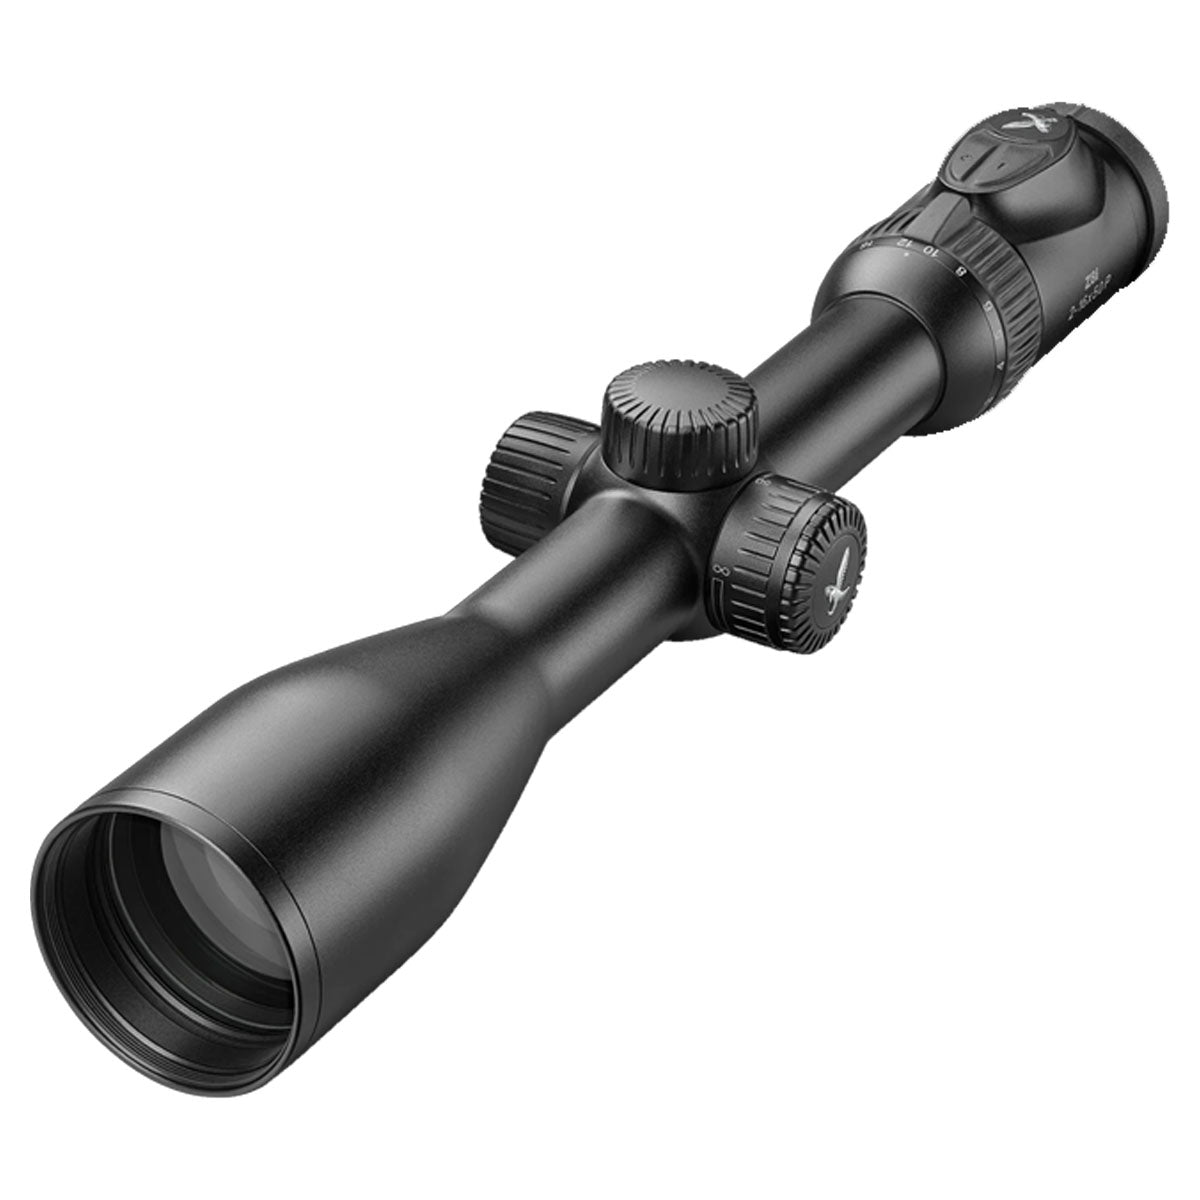 Swarovski Z8i 2-16x50 - 4W-I Riflescope in  by GOHUNT | Swarovski Optik - GOHUNT Shop